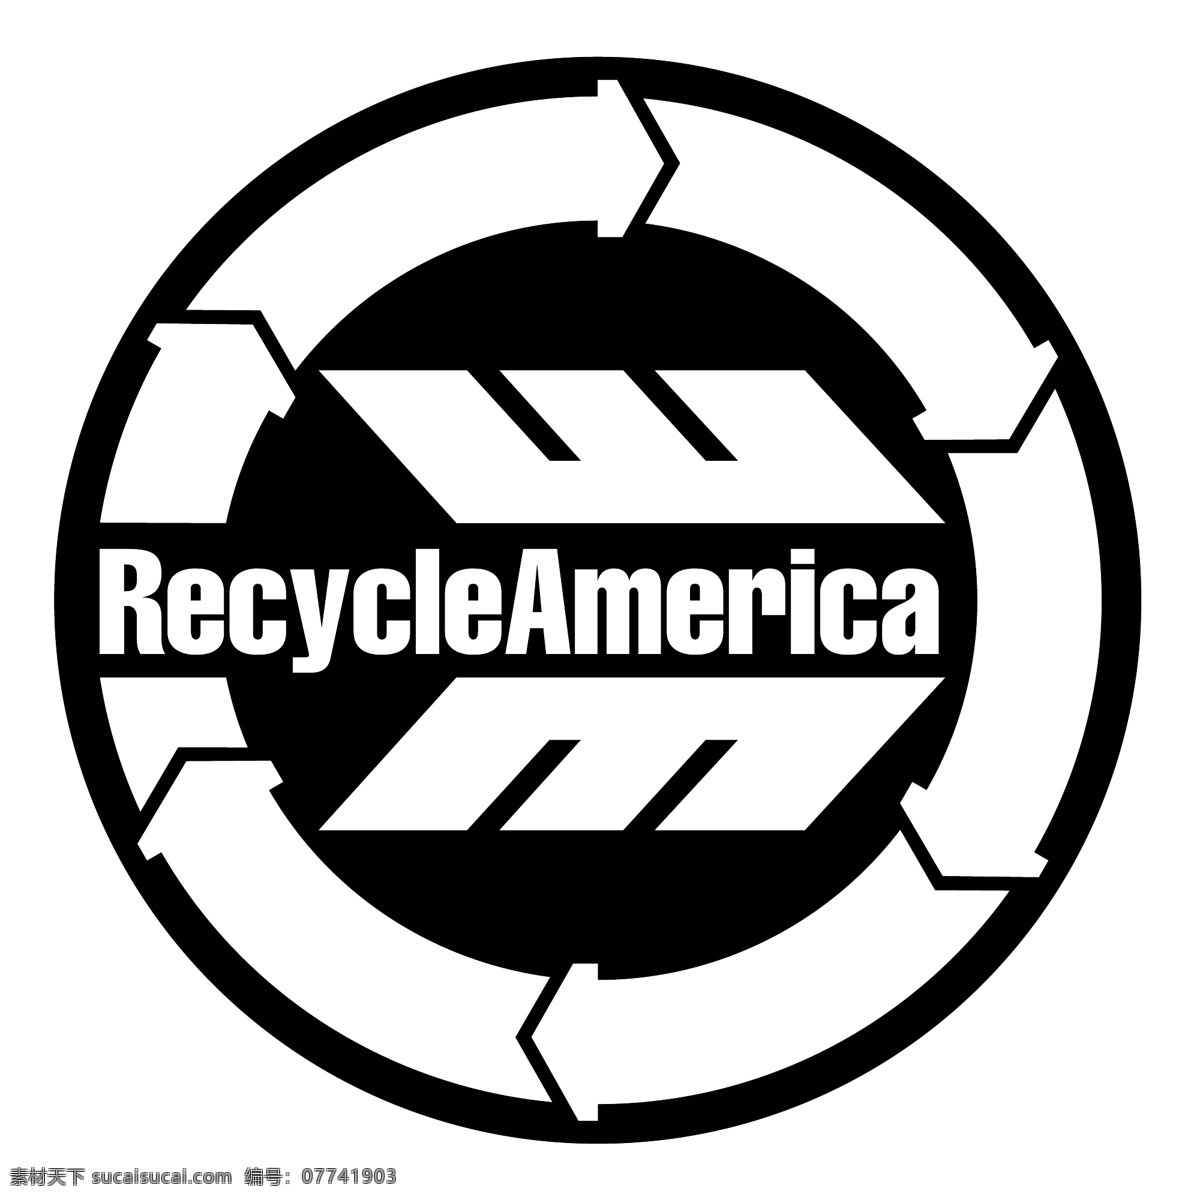 回美国 回收 回收的美国 美国 循环 向量 美国自由载体 载体的美国 美国的自由 自由的美国 美国美国 无 载体 在载体载体 蓝色